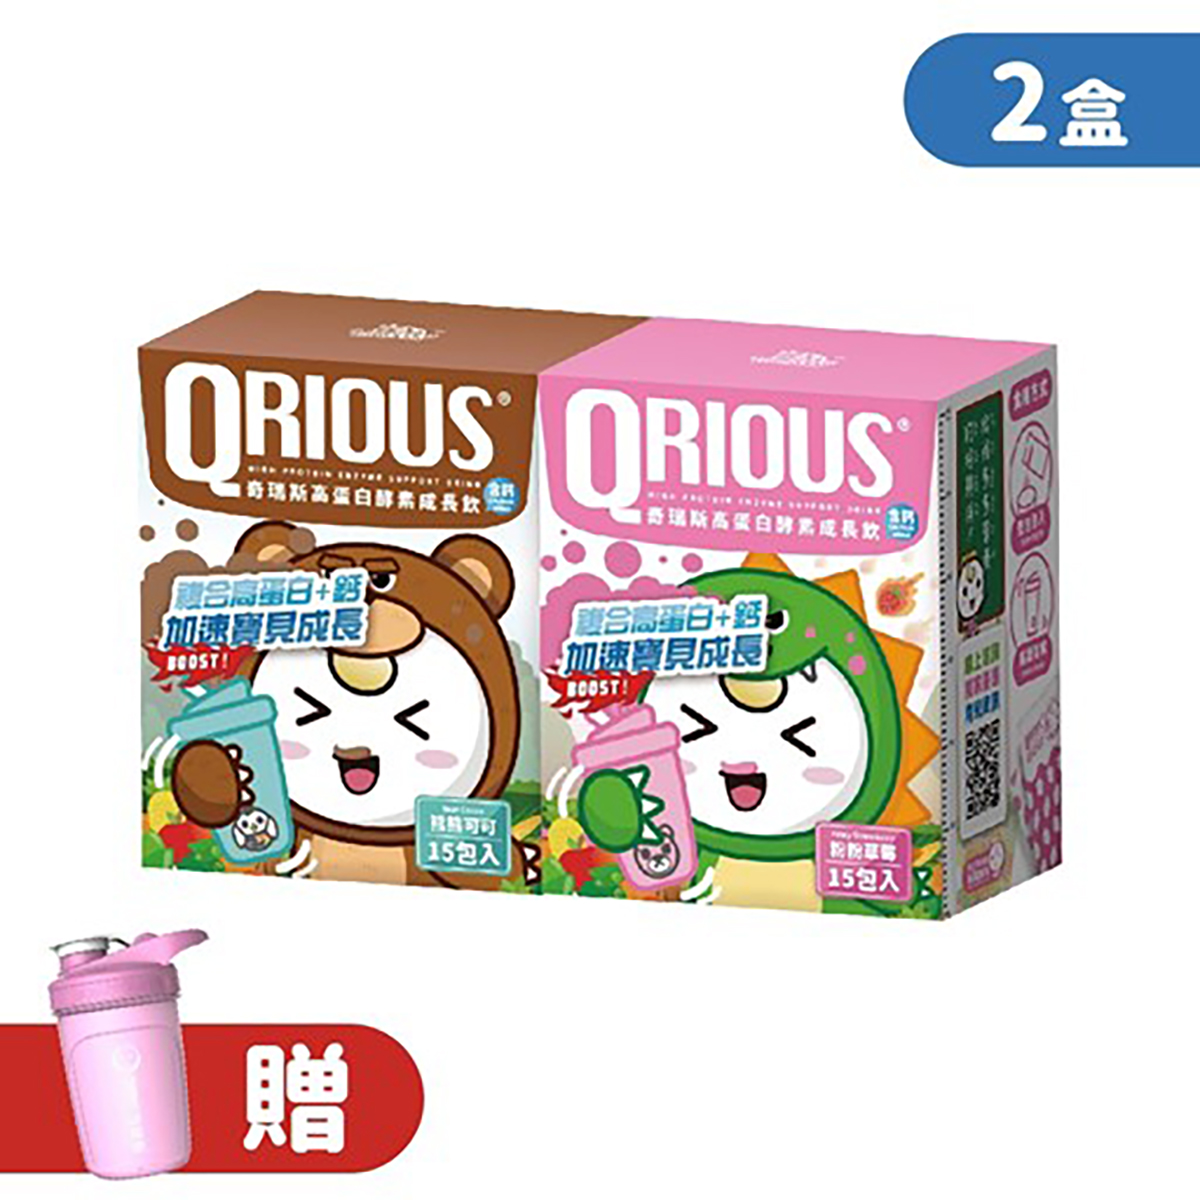 【生長發育必備】QRIOUS®奇瑞斯複方蛋白+鈣成長飲-草莓+可可(2盒)贈小Ｑ雪克杯(1入)